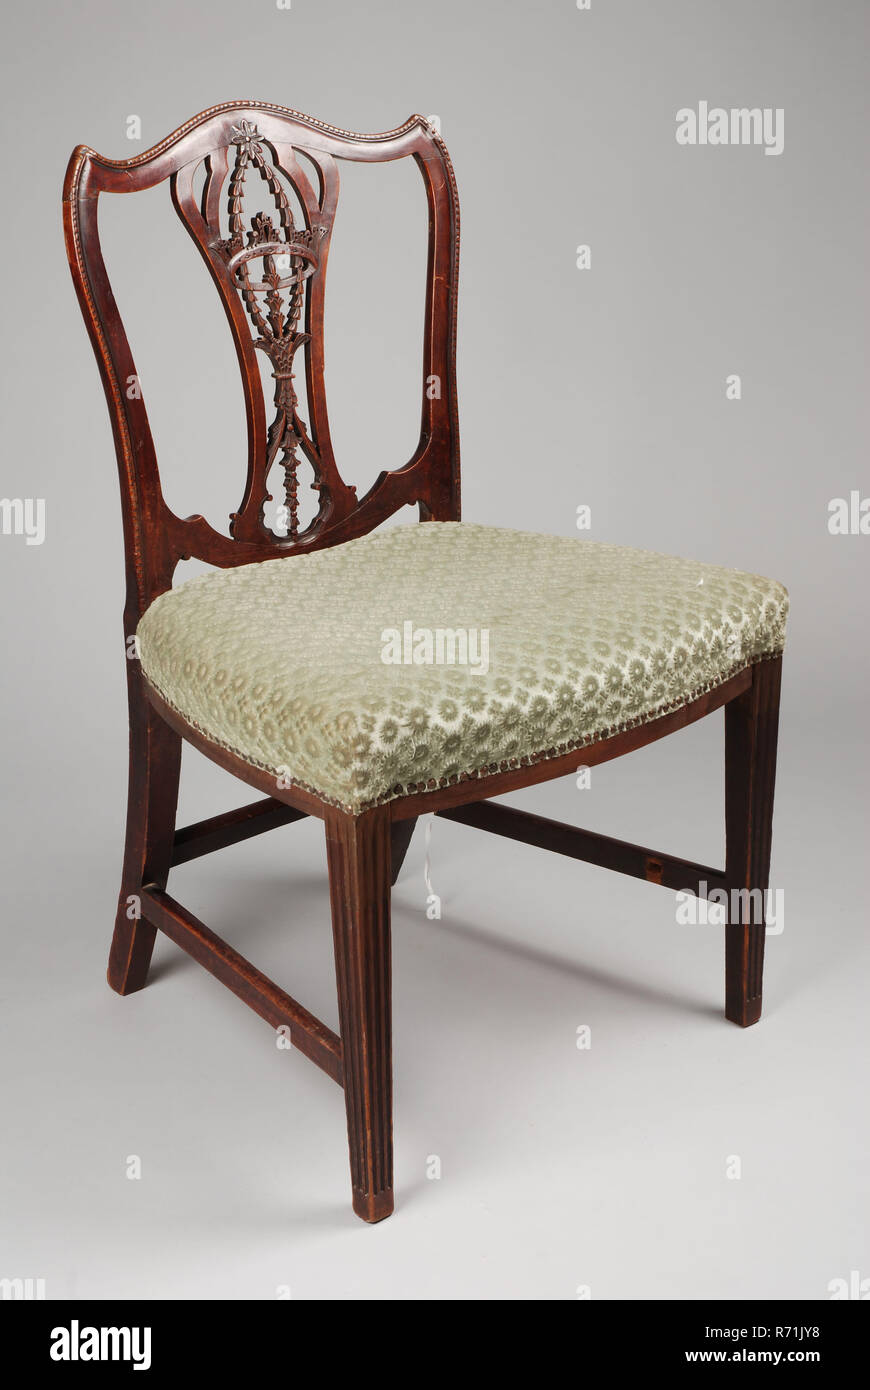 Mahagoni gerade Chippendale Stuhl, gerade - Sitz Stuhl Sitz Möbel Interieur  interior design holz Mahagoni Buche samt Messing, öffnen Sie die  Arbeitsplatte in der Krone und Girlanden Hellgrün velor Polsterung  Vorderbeine mit